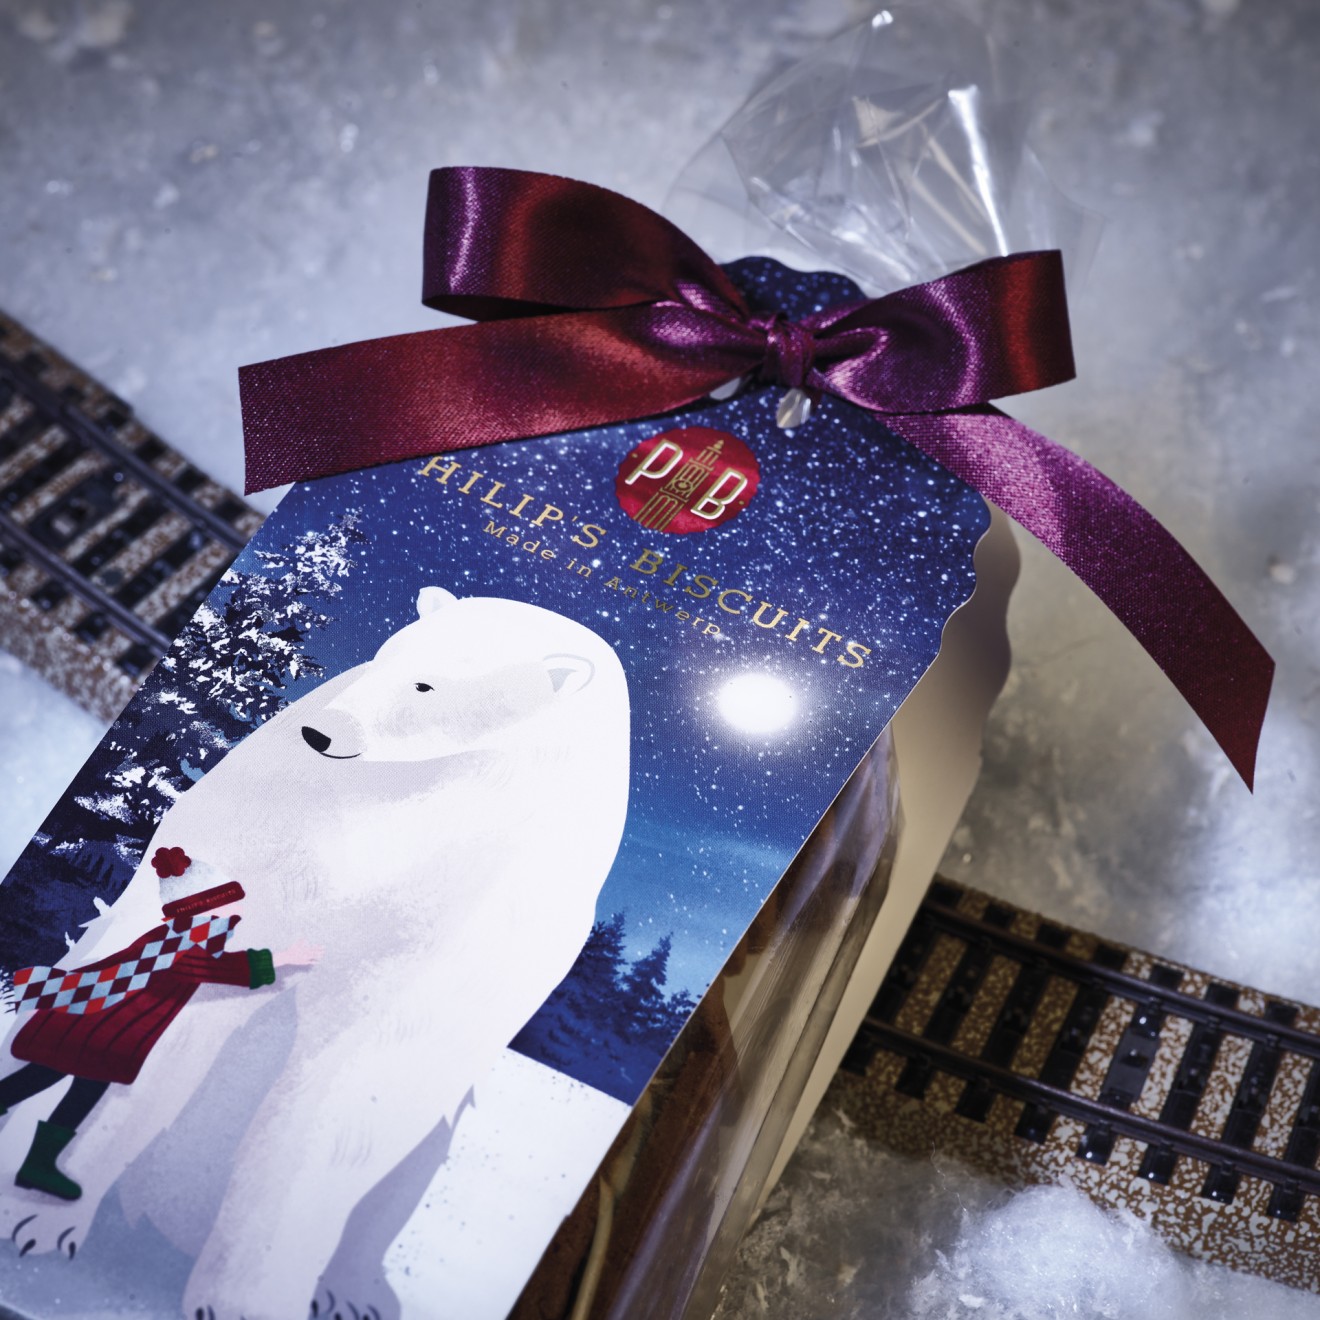 Quatre Mains package design - ballotin, cold foil, polar bear, Polar express, holiday season, magic